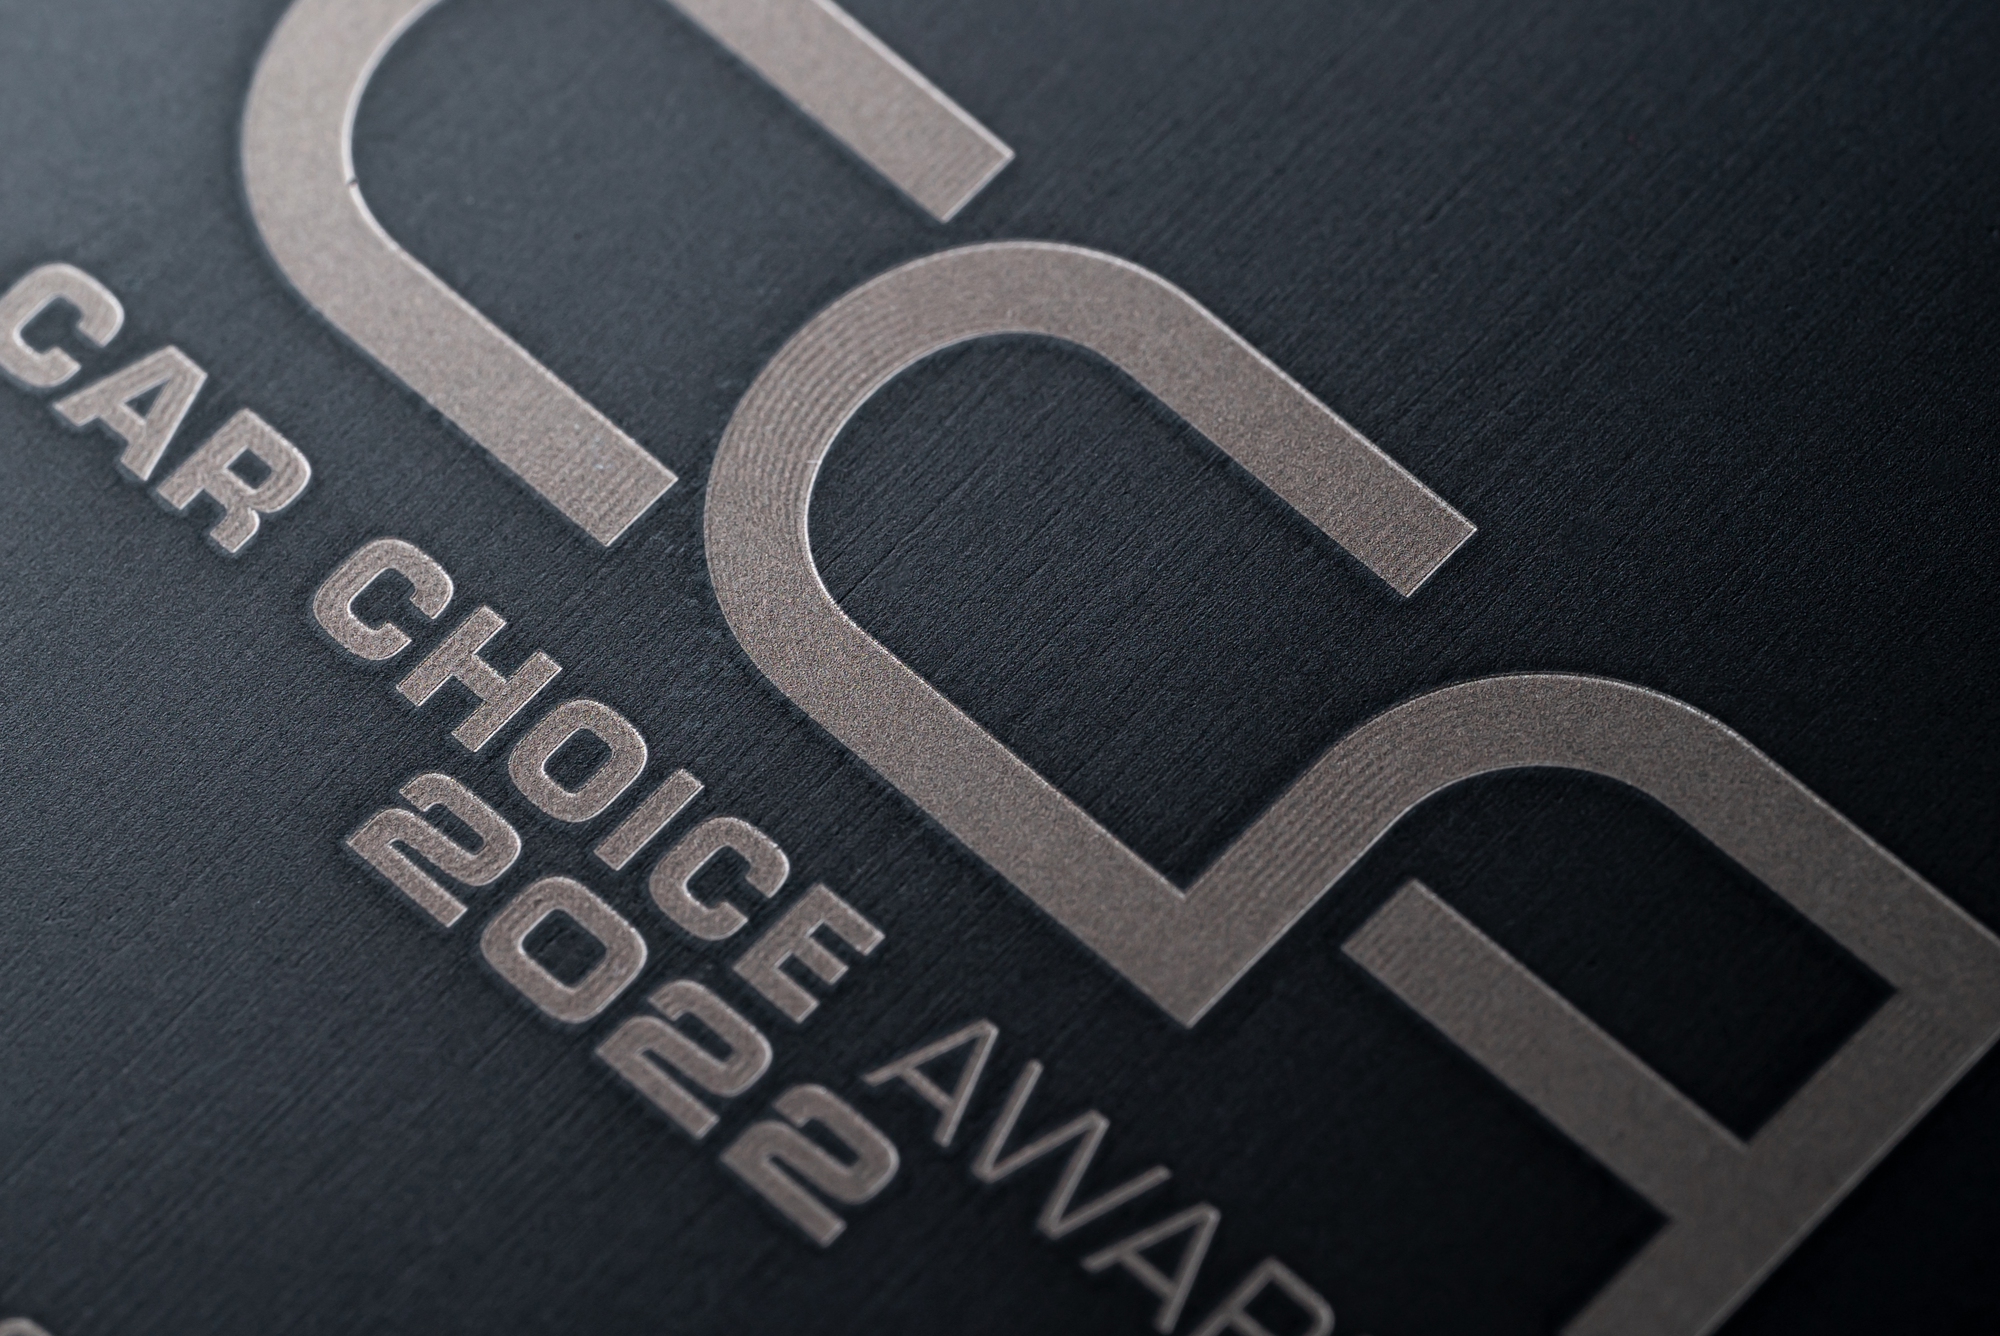 Hé lộ cúp vinh danh Car Choice Awards 2022 trước giờ G: Thiết kế đậm chất nghệ thuật, mô phỏng logo tinh tế - Ảnh 7.